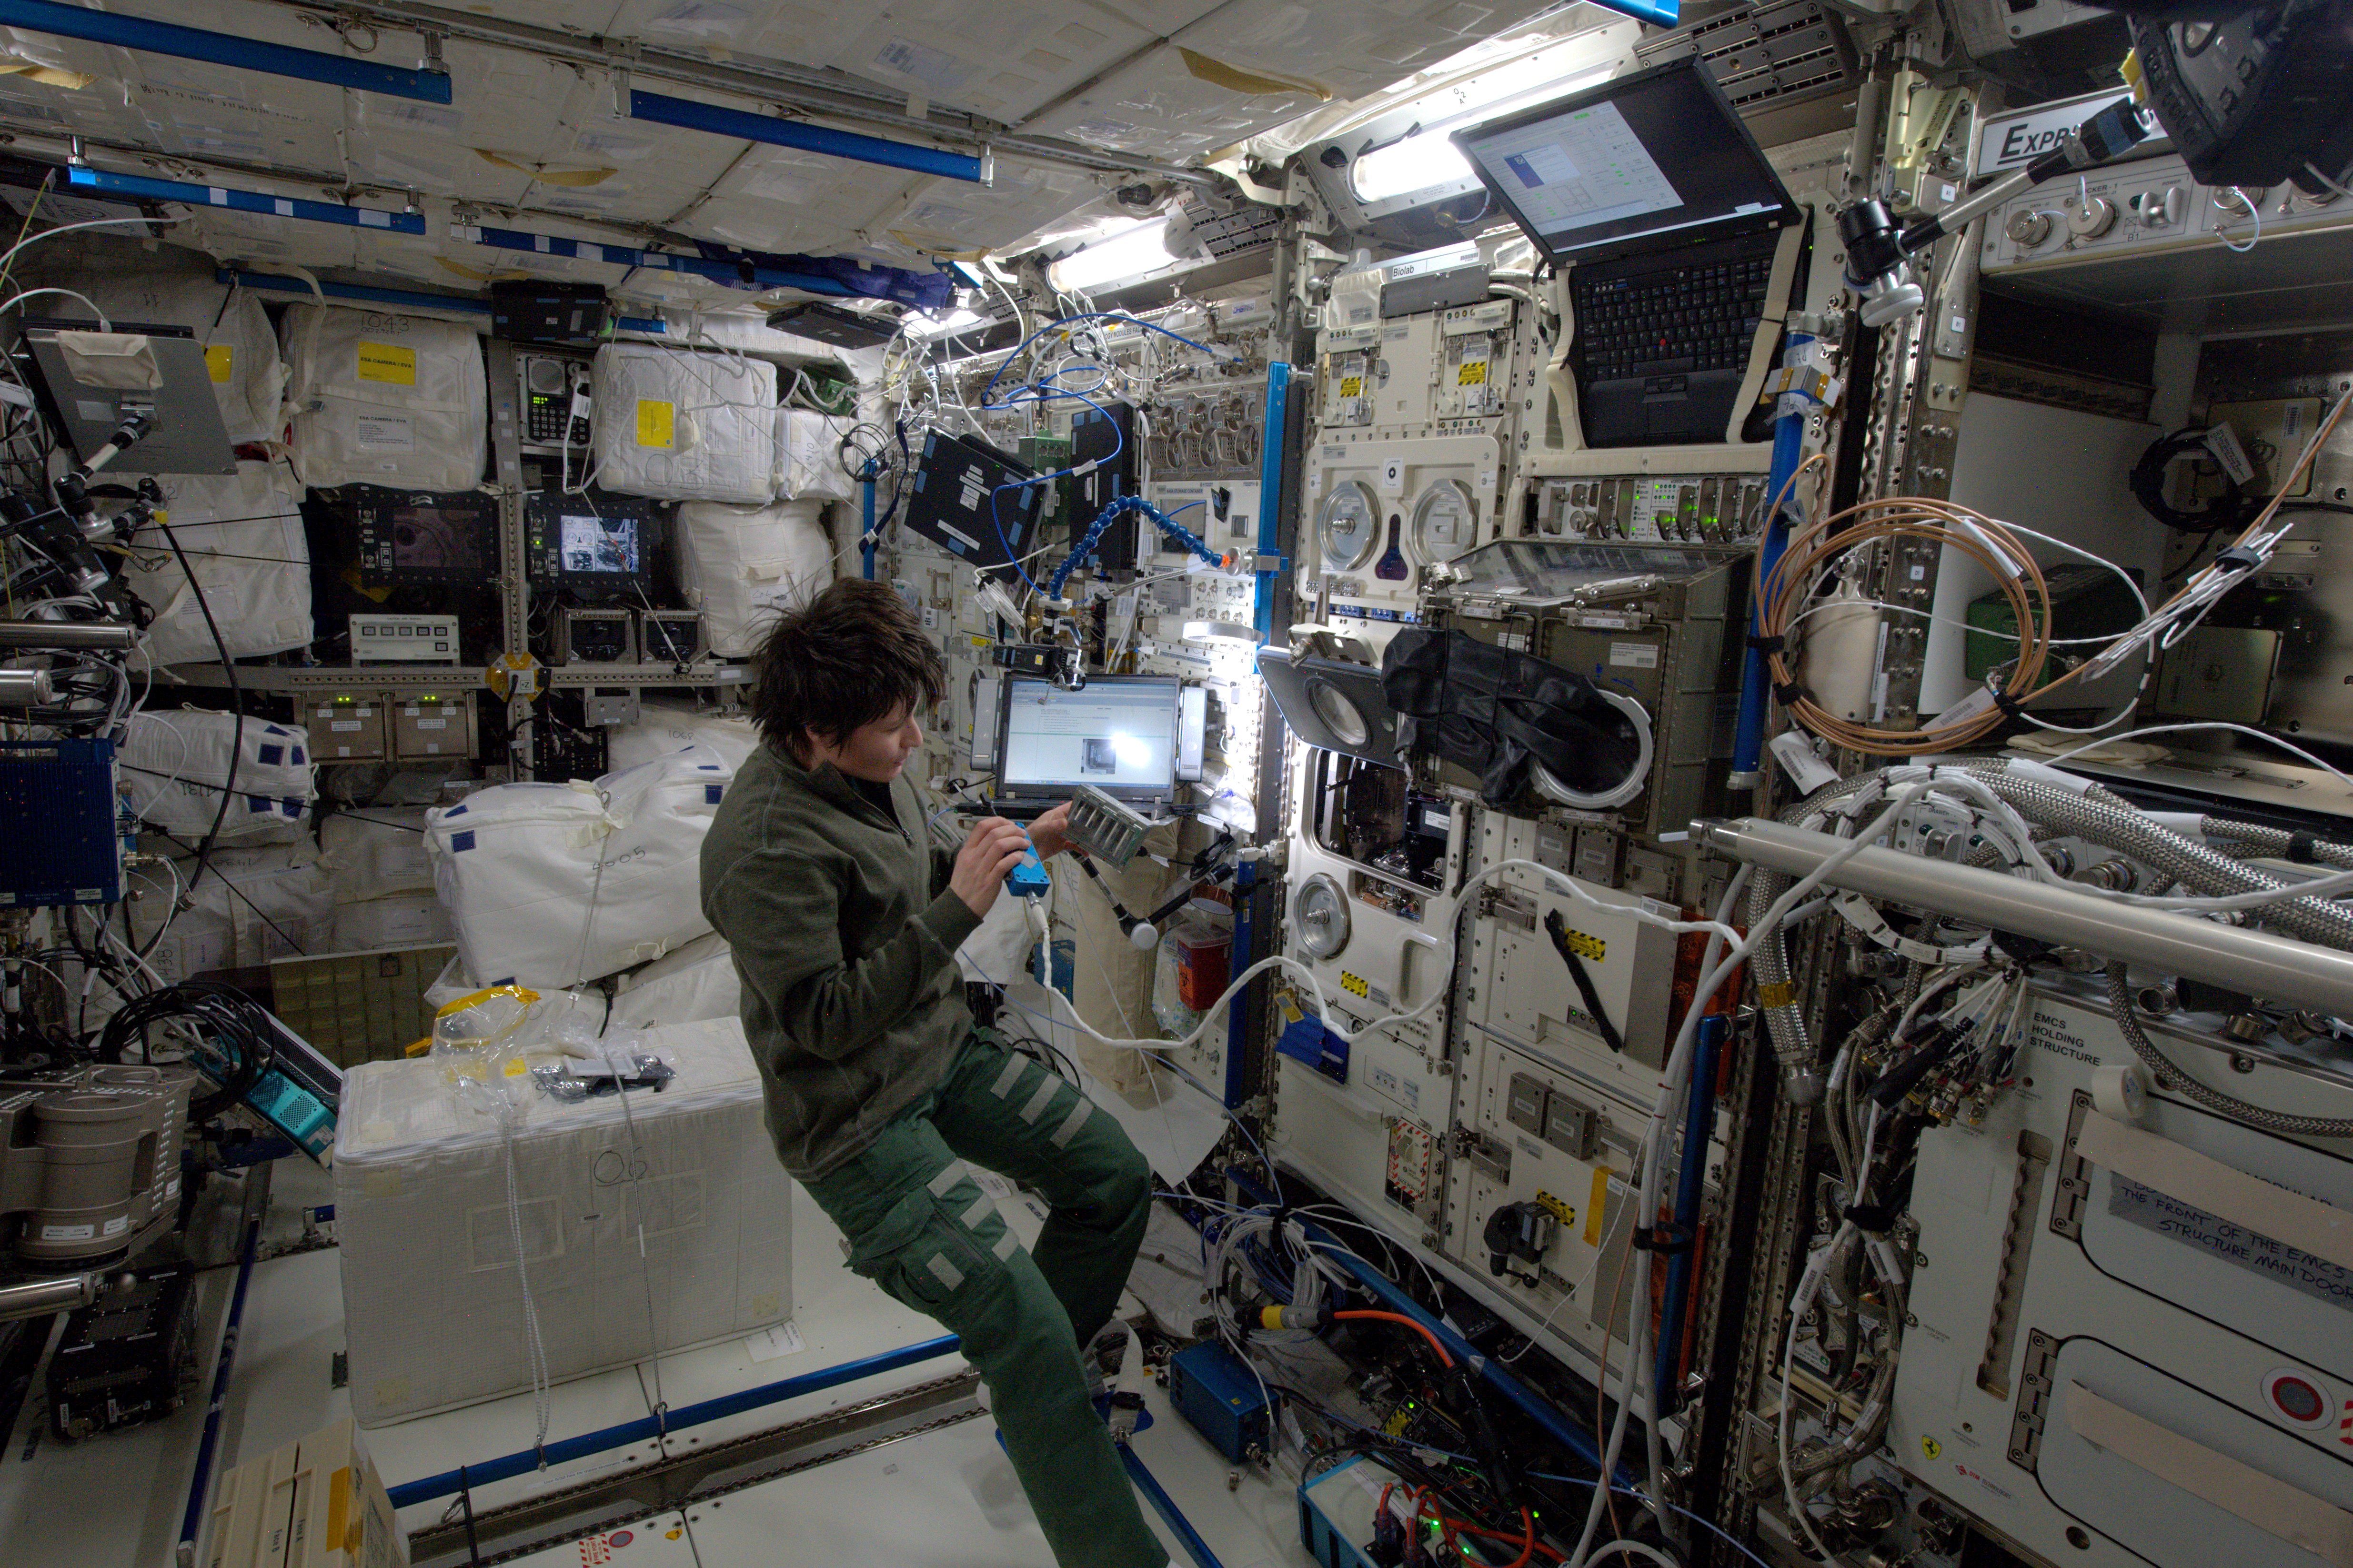 Allow space. Коламбус МКС. Саманта Кристофоретти в скафандре Орлан МКС. Самое тёплое место в космосе. Аккумуляторы тепла в космической сфере.